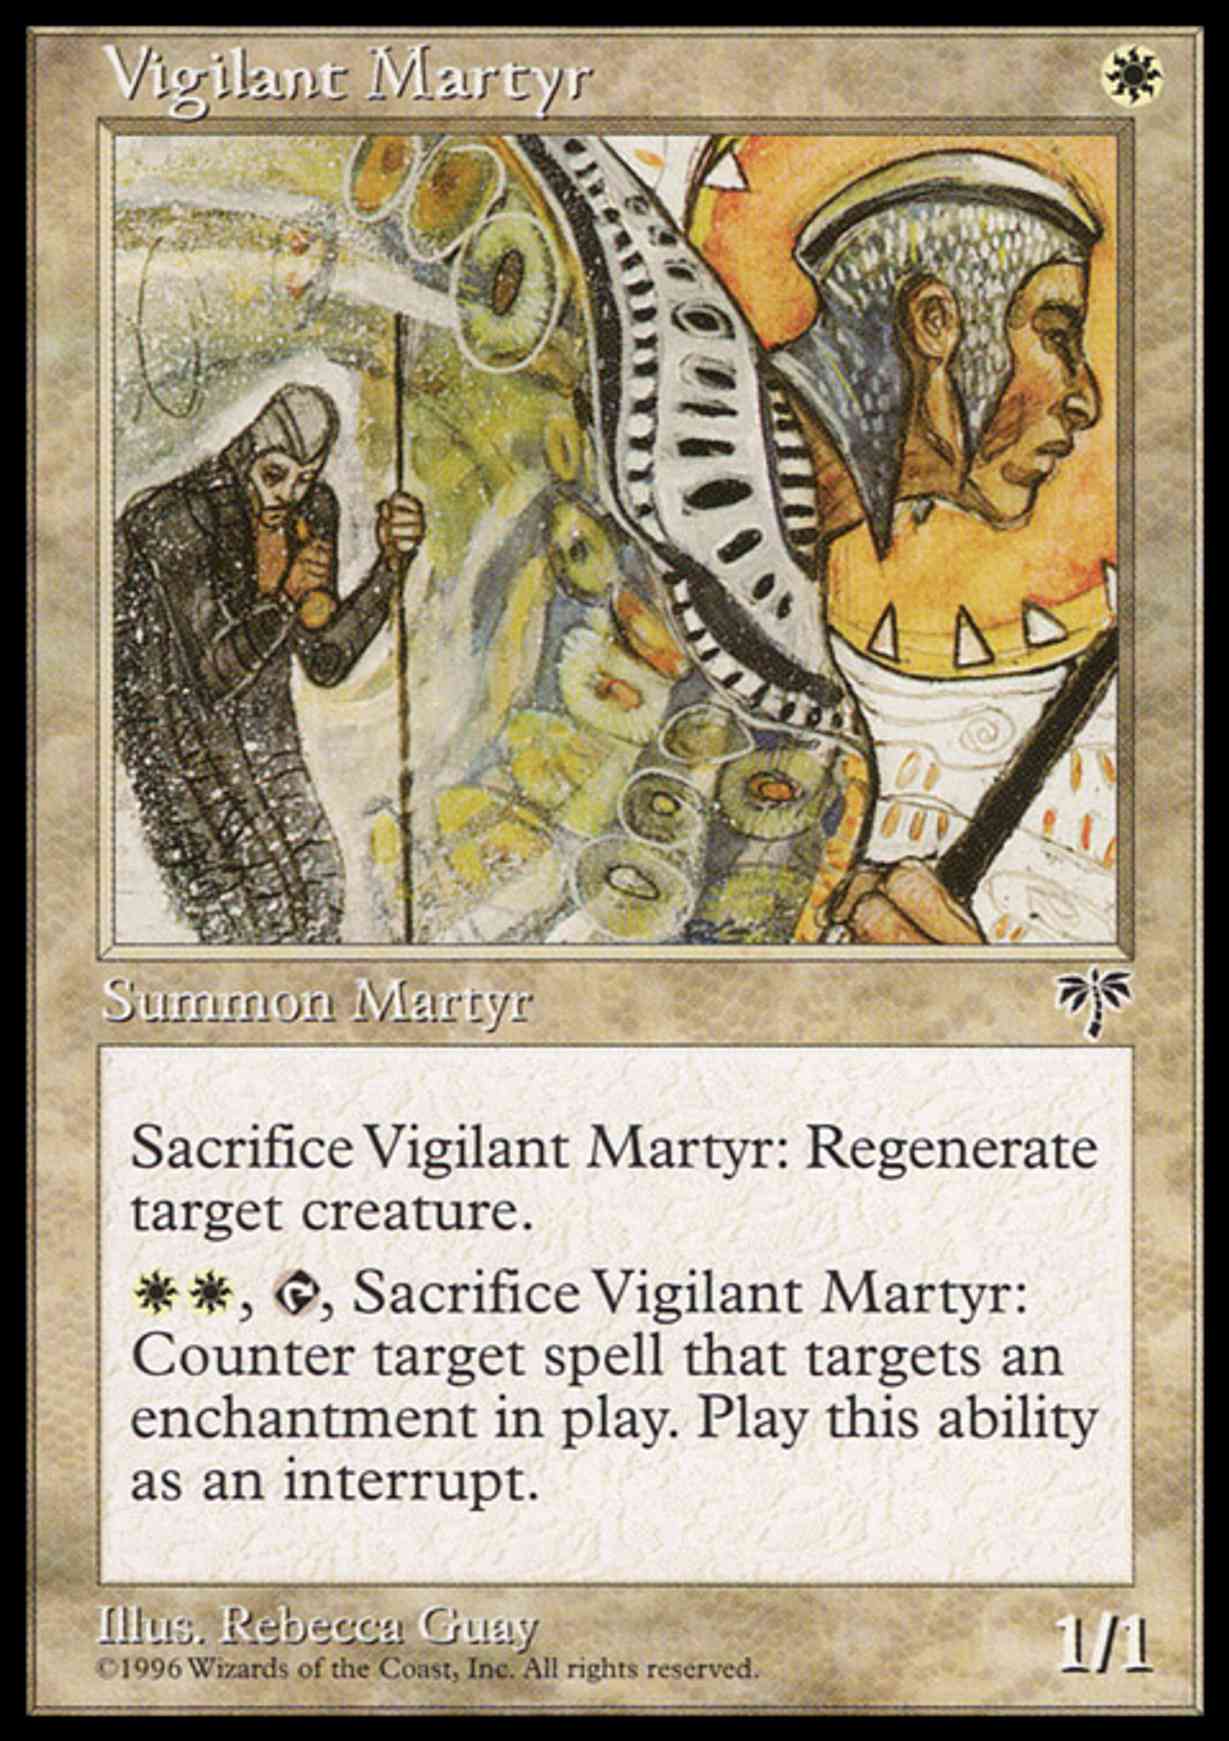 Vigilant Martyr magic card front